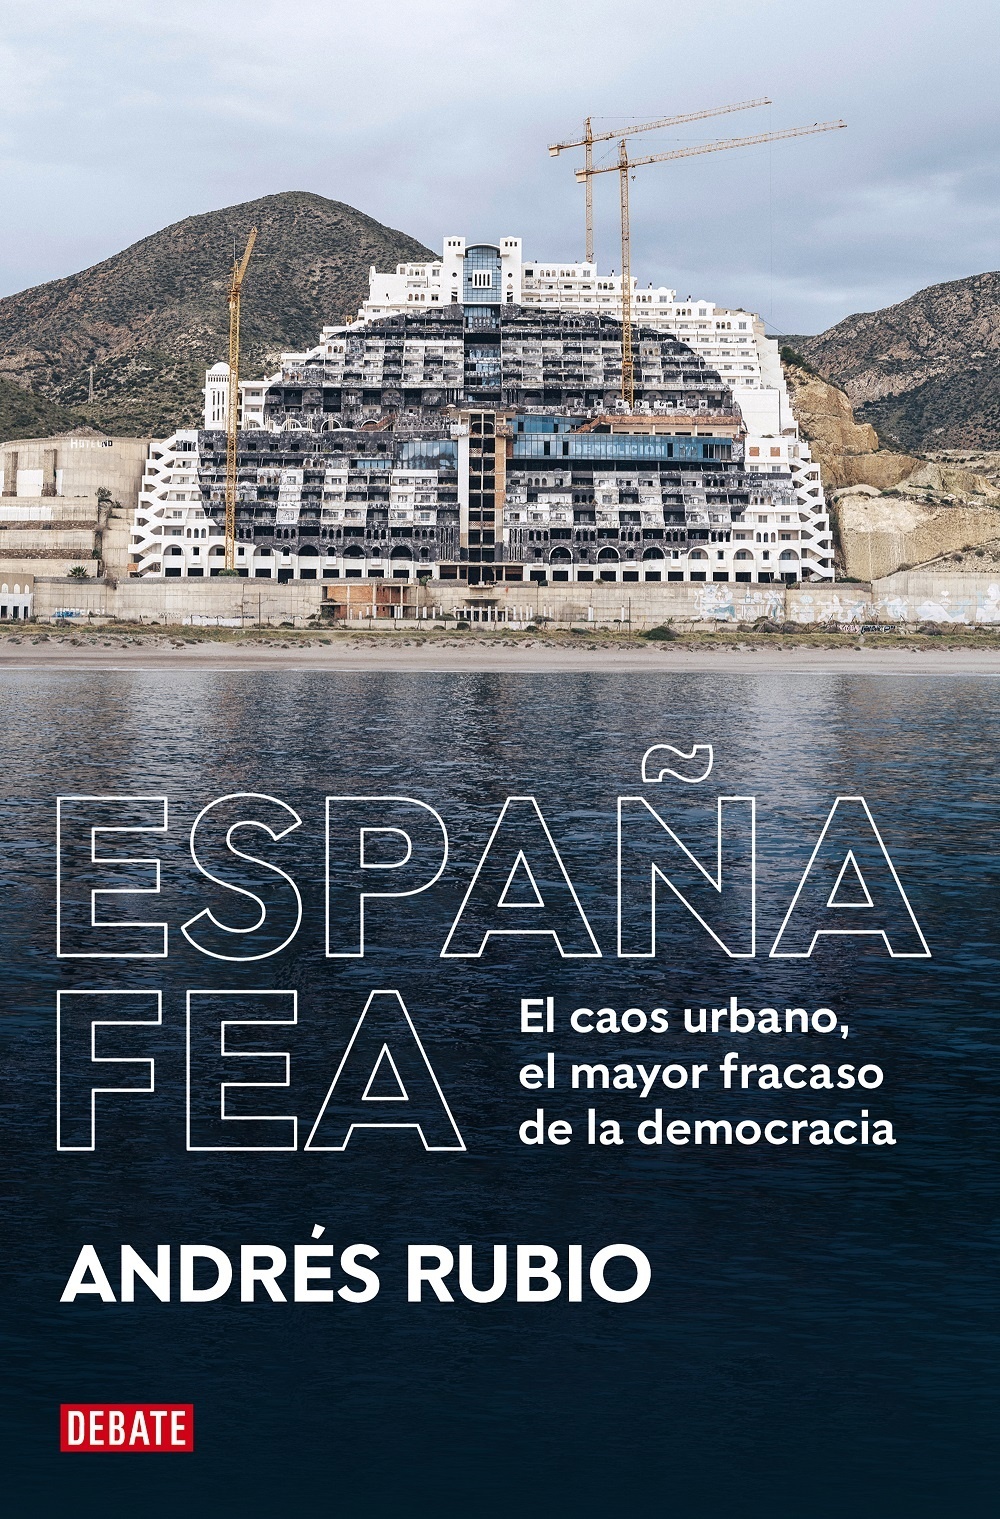 España fea "El caos urbano, el mayor fracaso de la democracia". 